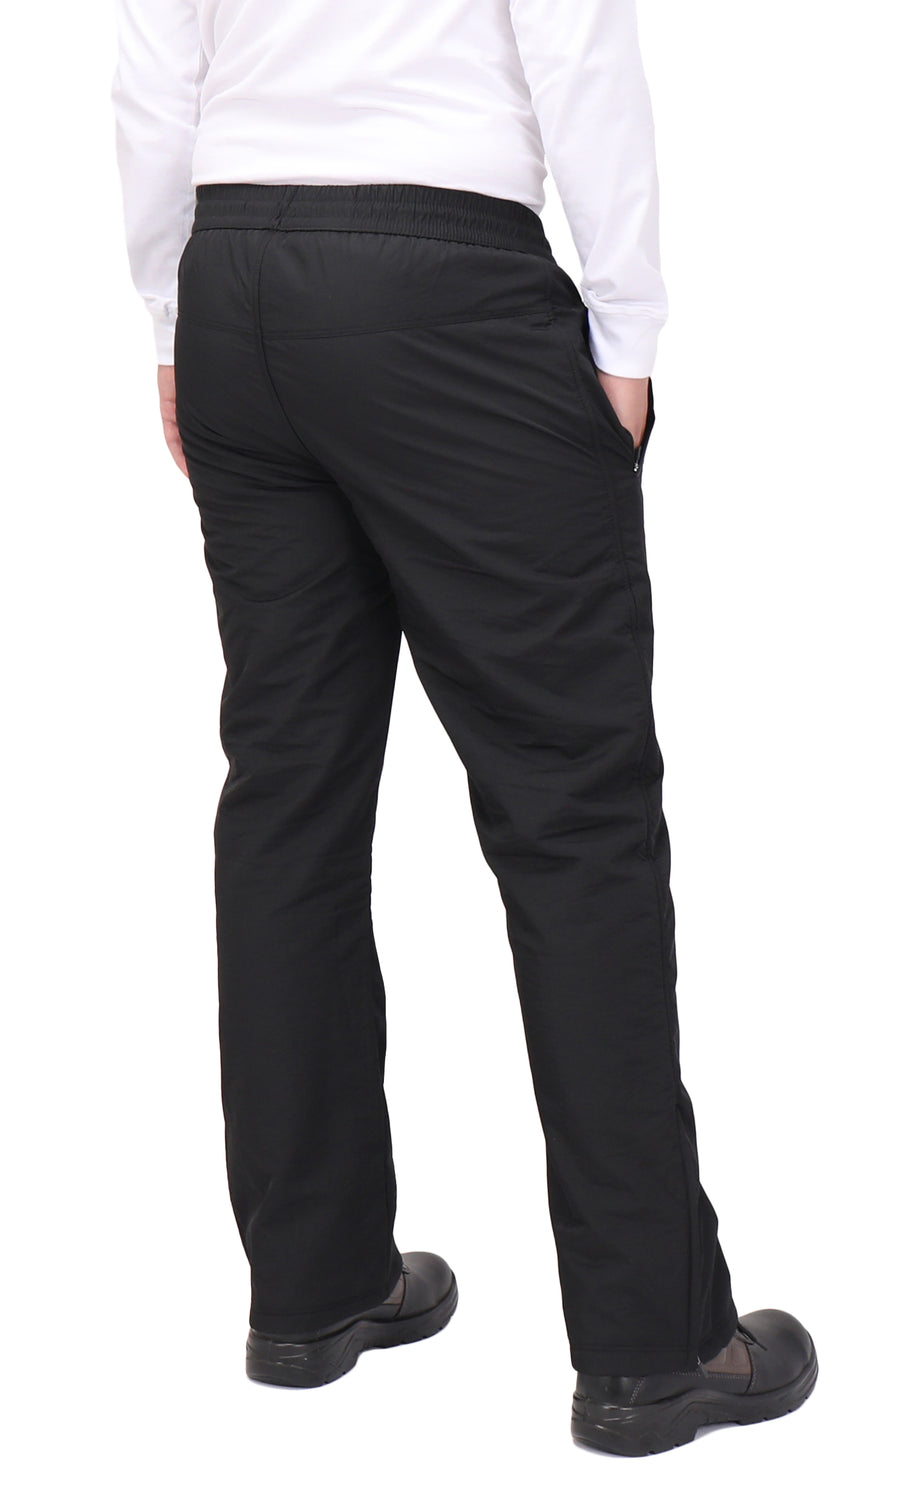 Jolly Snow Pants, Fleeceactive - Unisex Fleece-Lined Waterproof